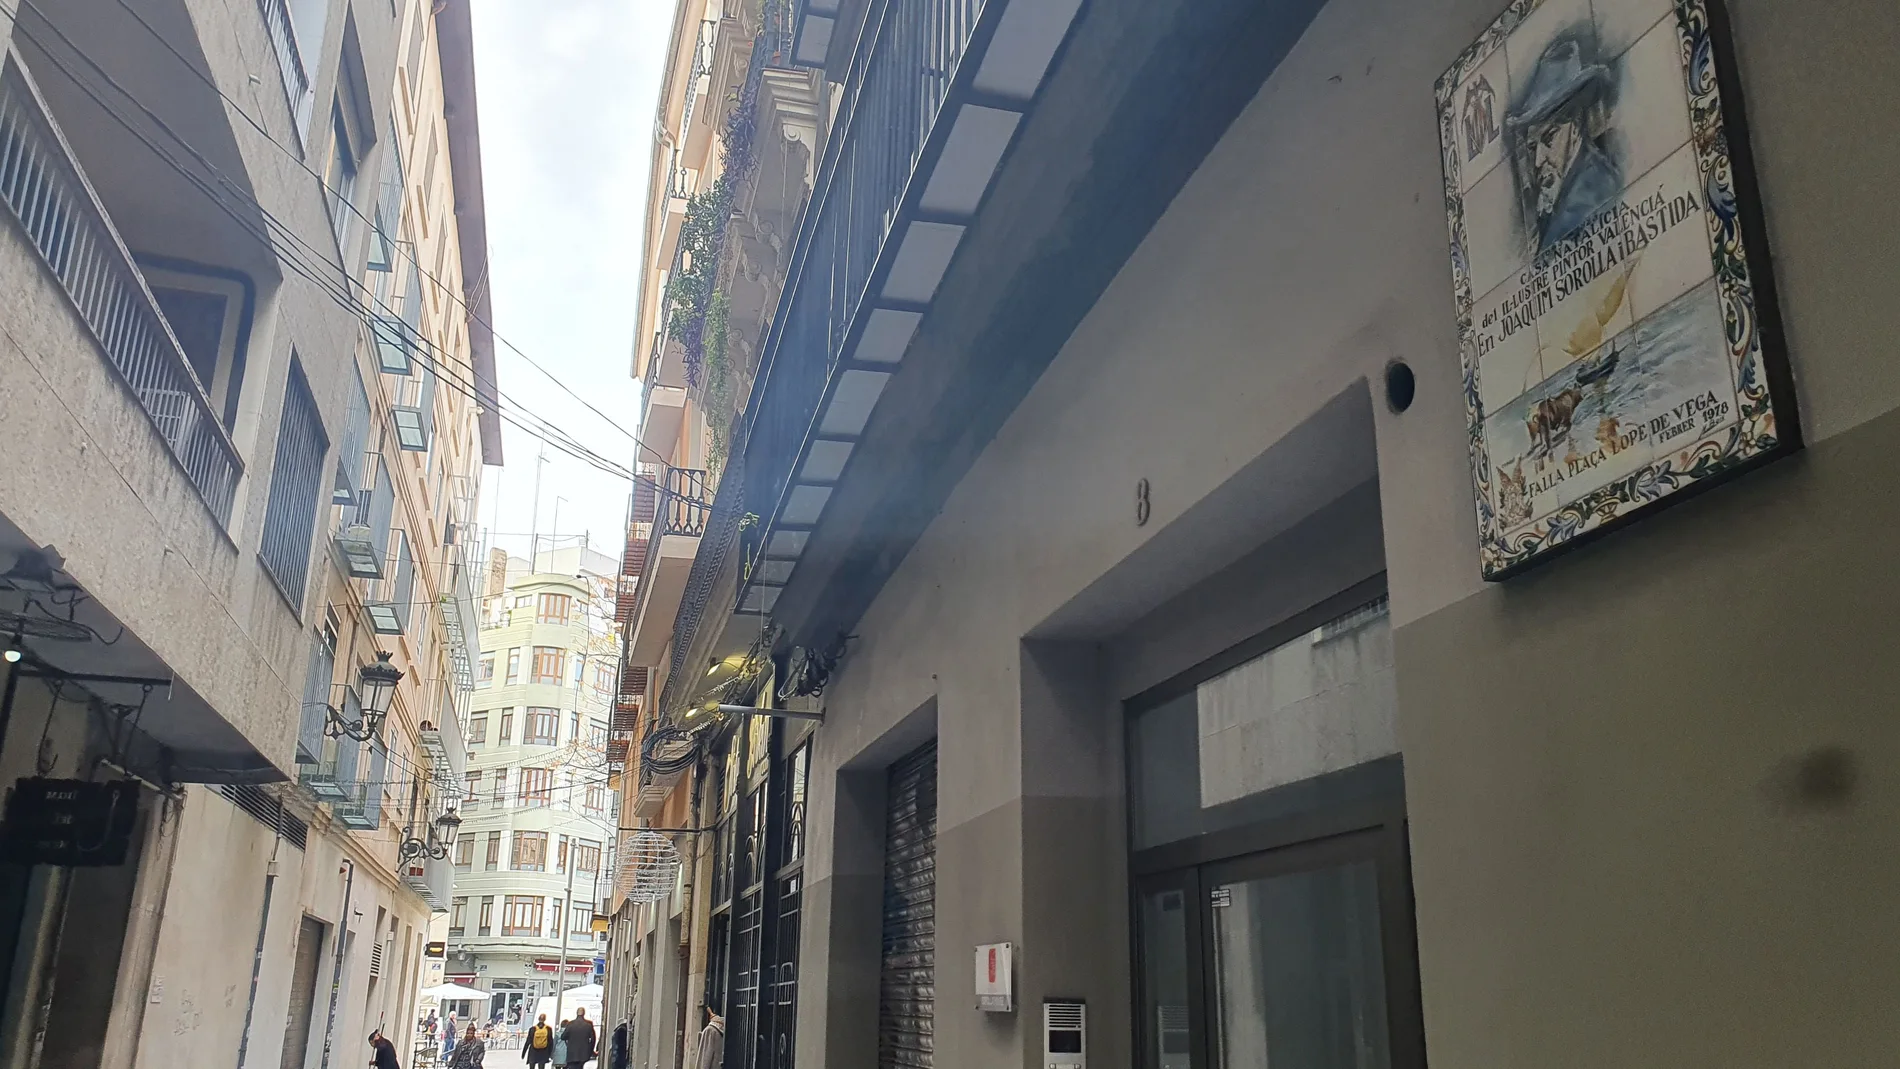 Placa conmemorativa en la fachada de la casa de la calle Mantes donde nació Joaquín Sorolla